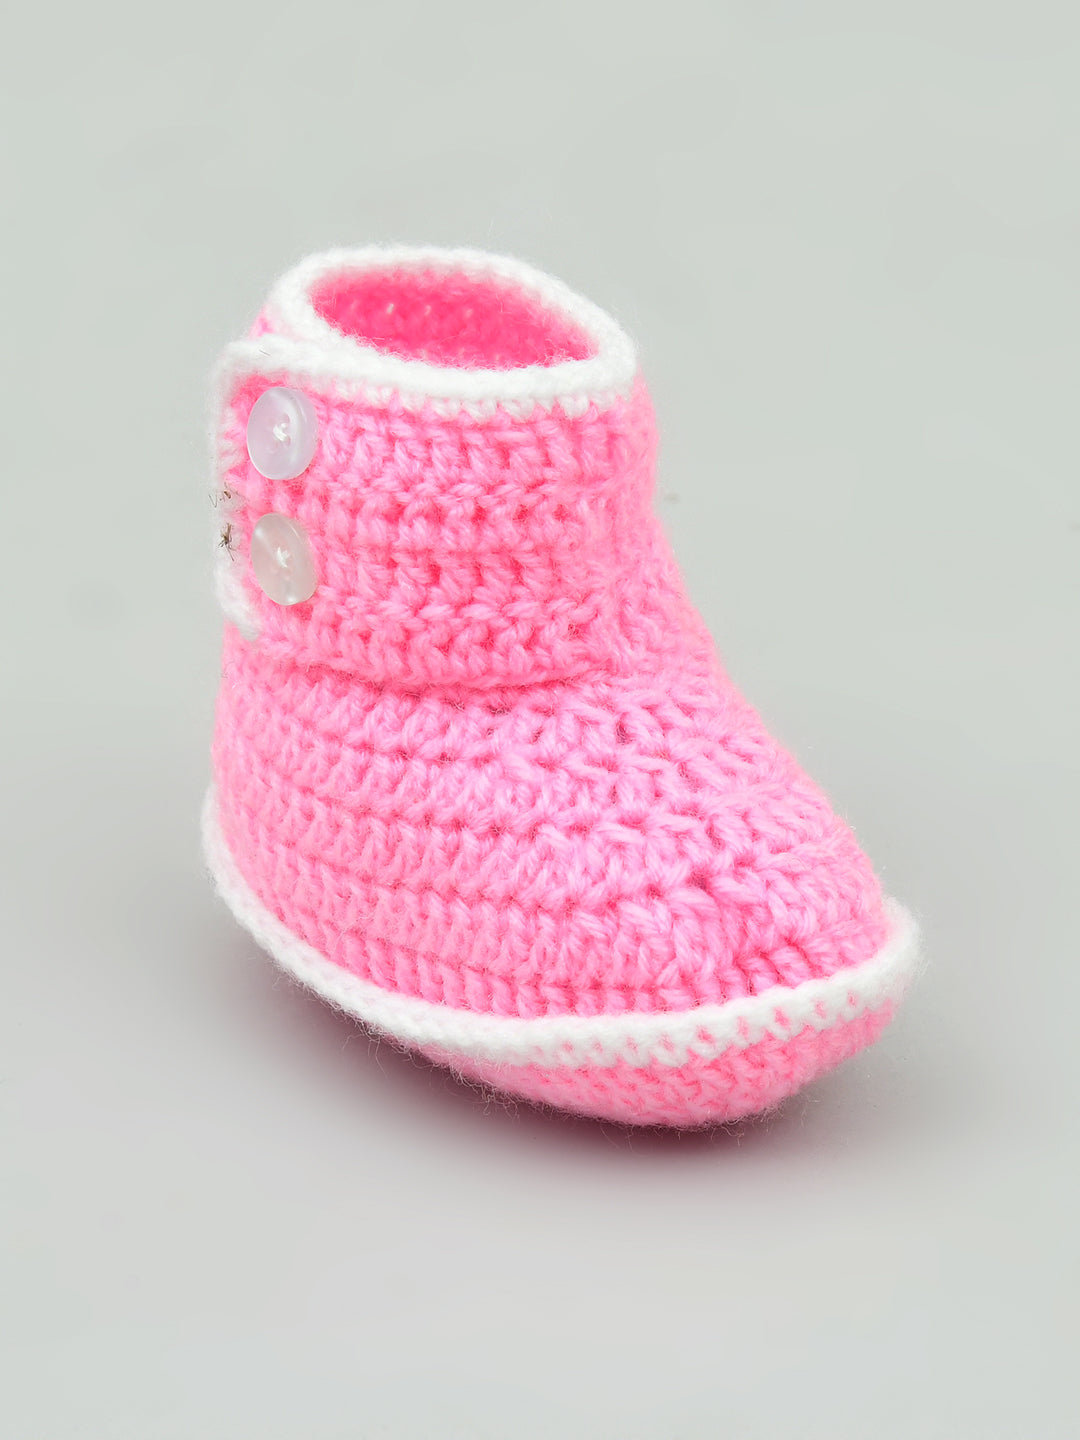 Pink Woollen Baby Booties